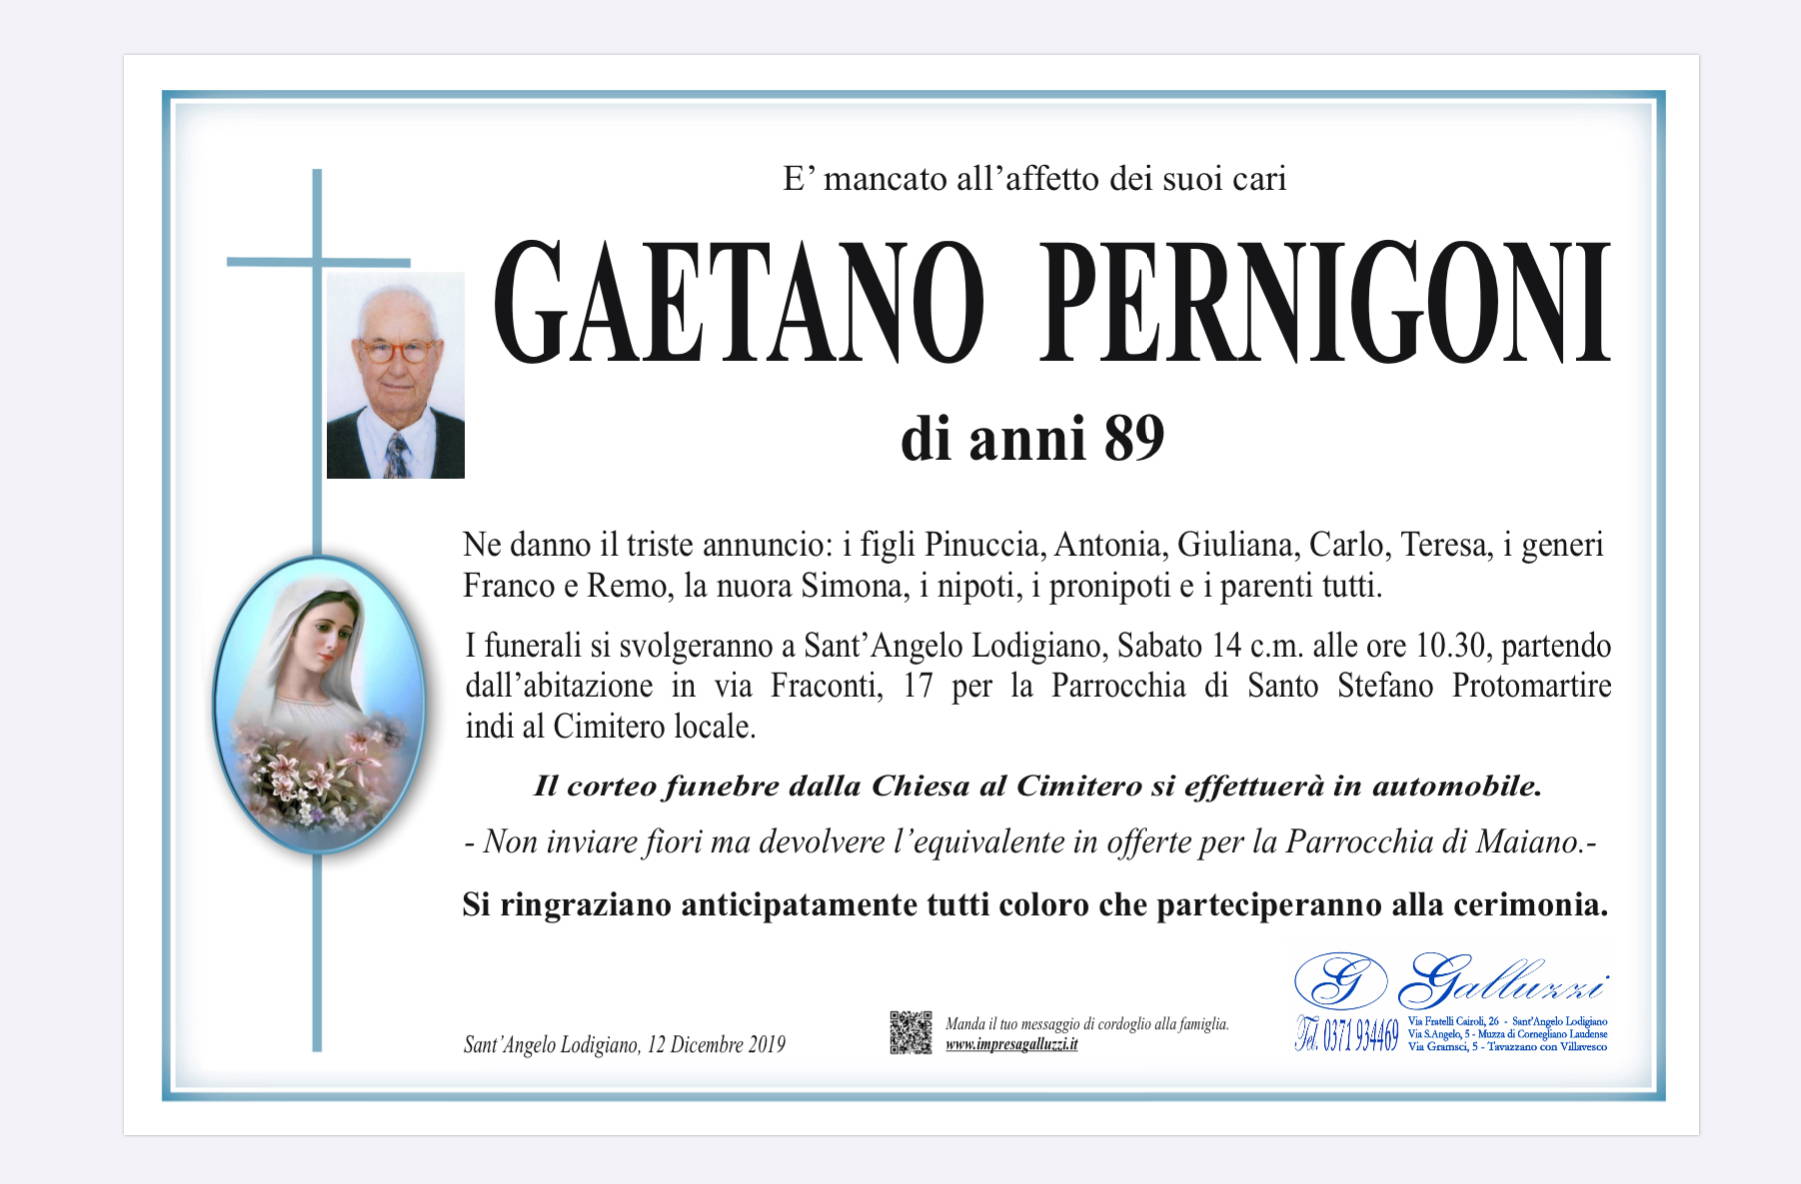 Gaetano Pernigoni